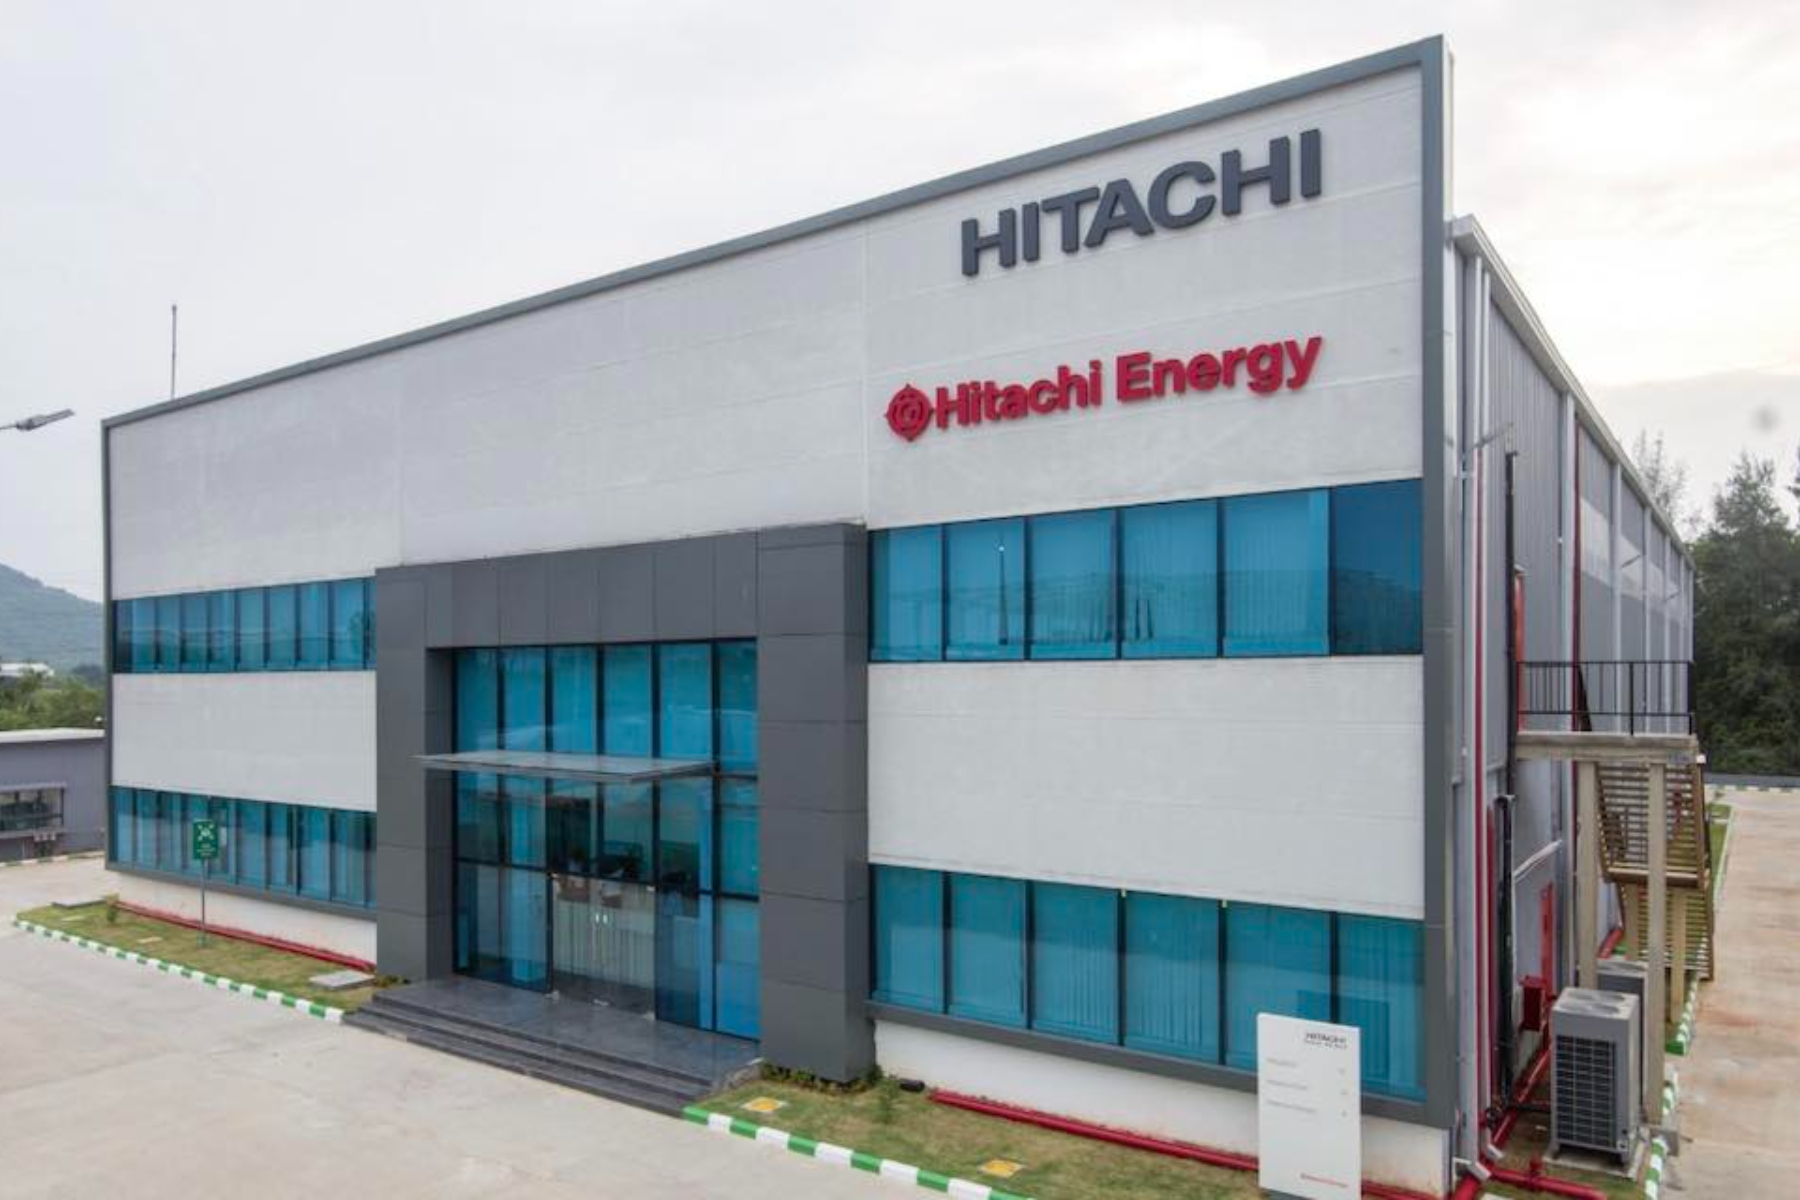 Hitachi Energy publica vacantes de trabajo para ingenieros y otros profesionales